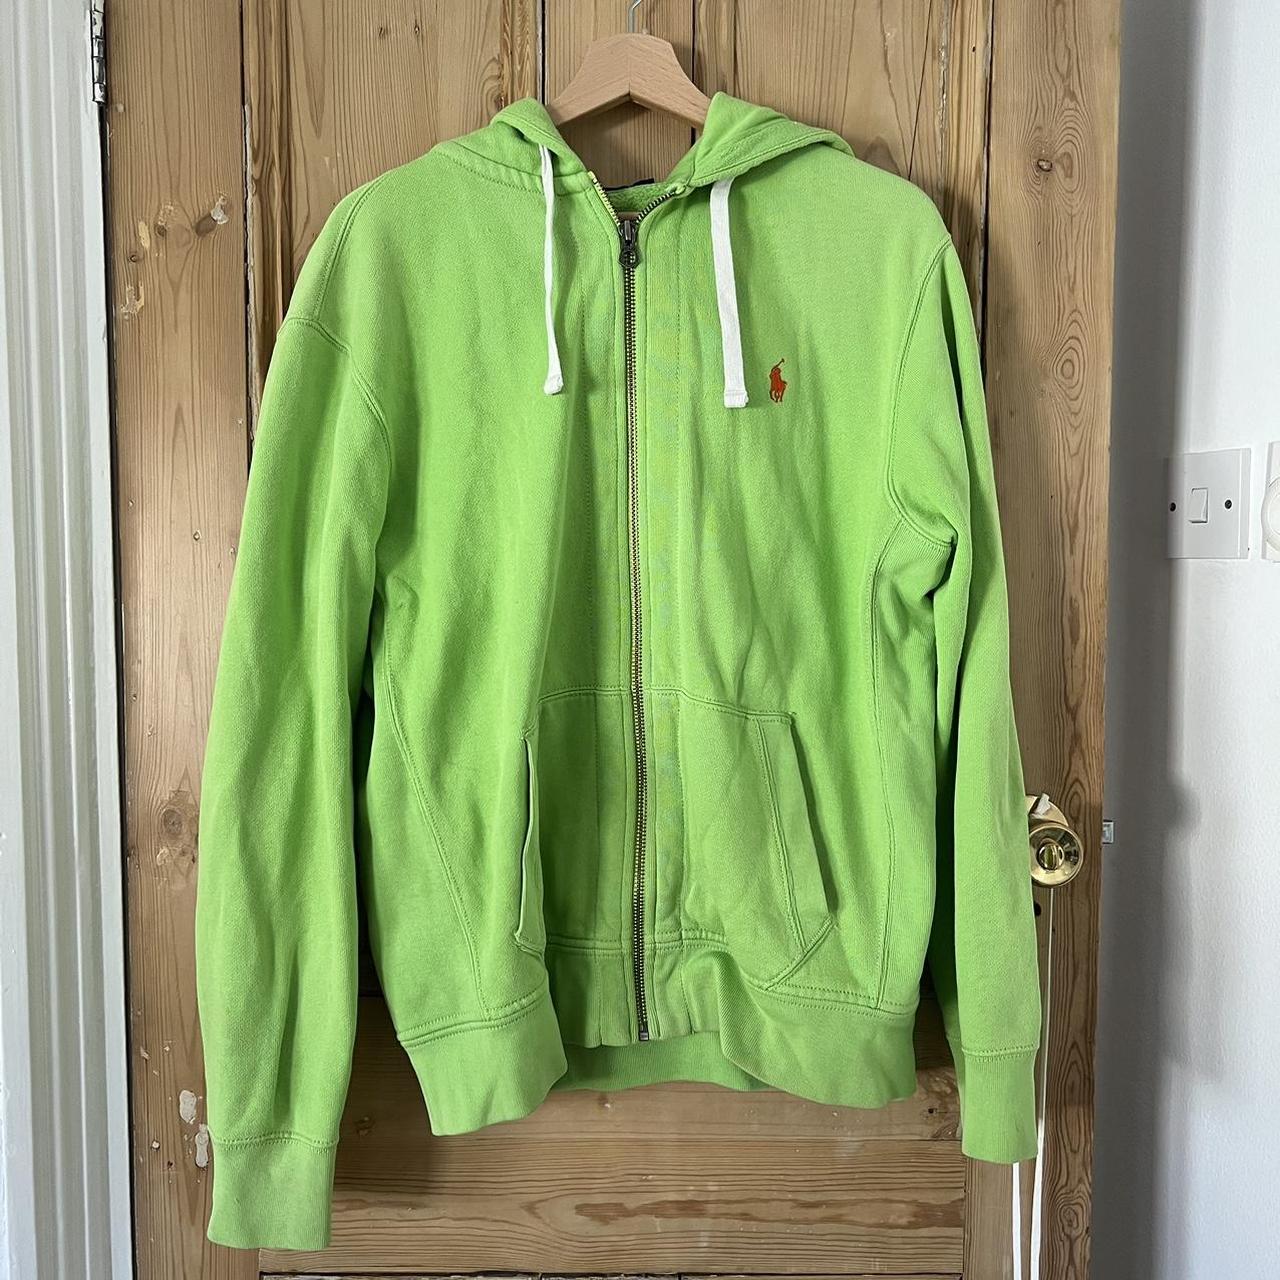 Polo ralph lauren zip up hoodies Apple green... - Depop